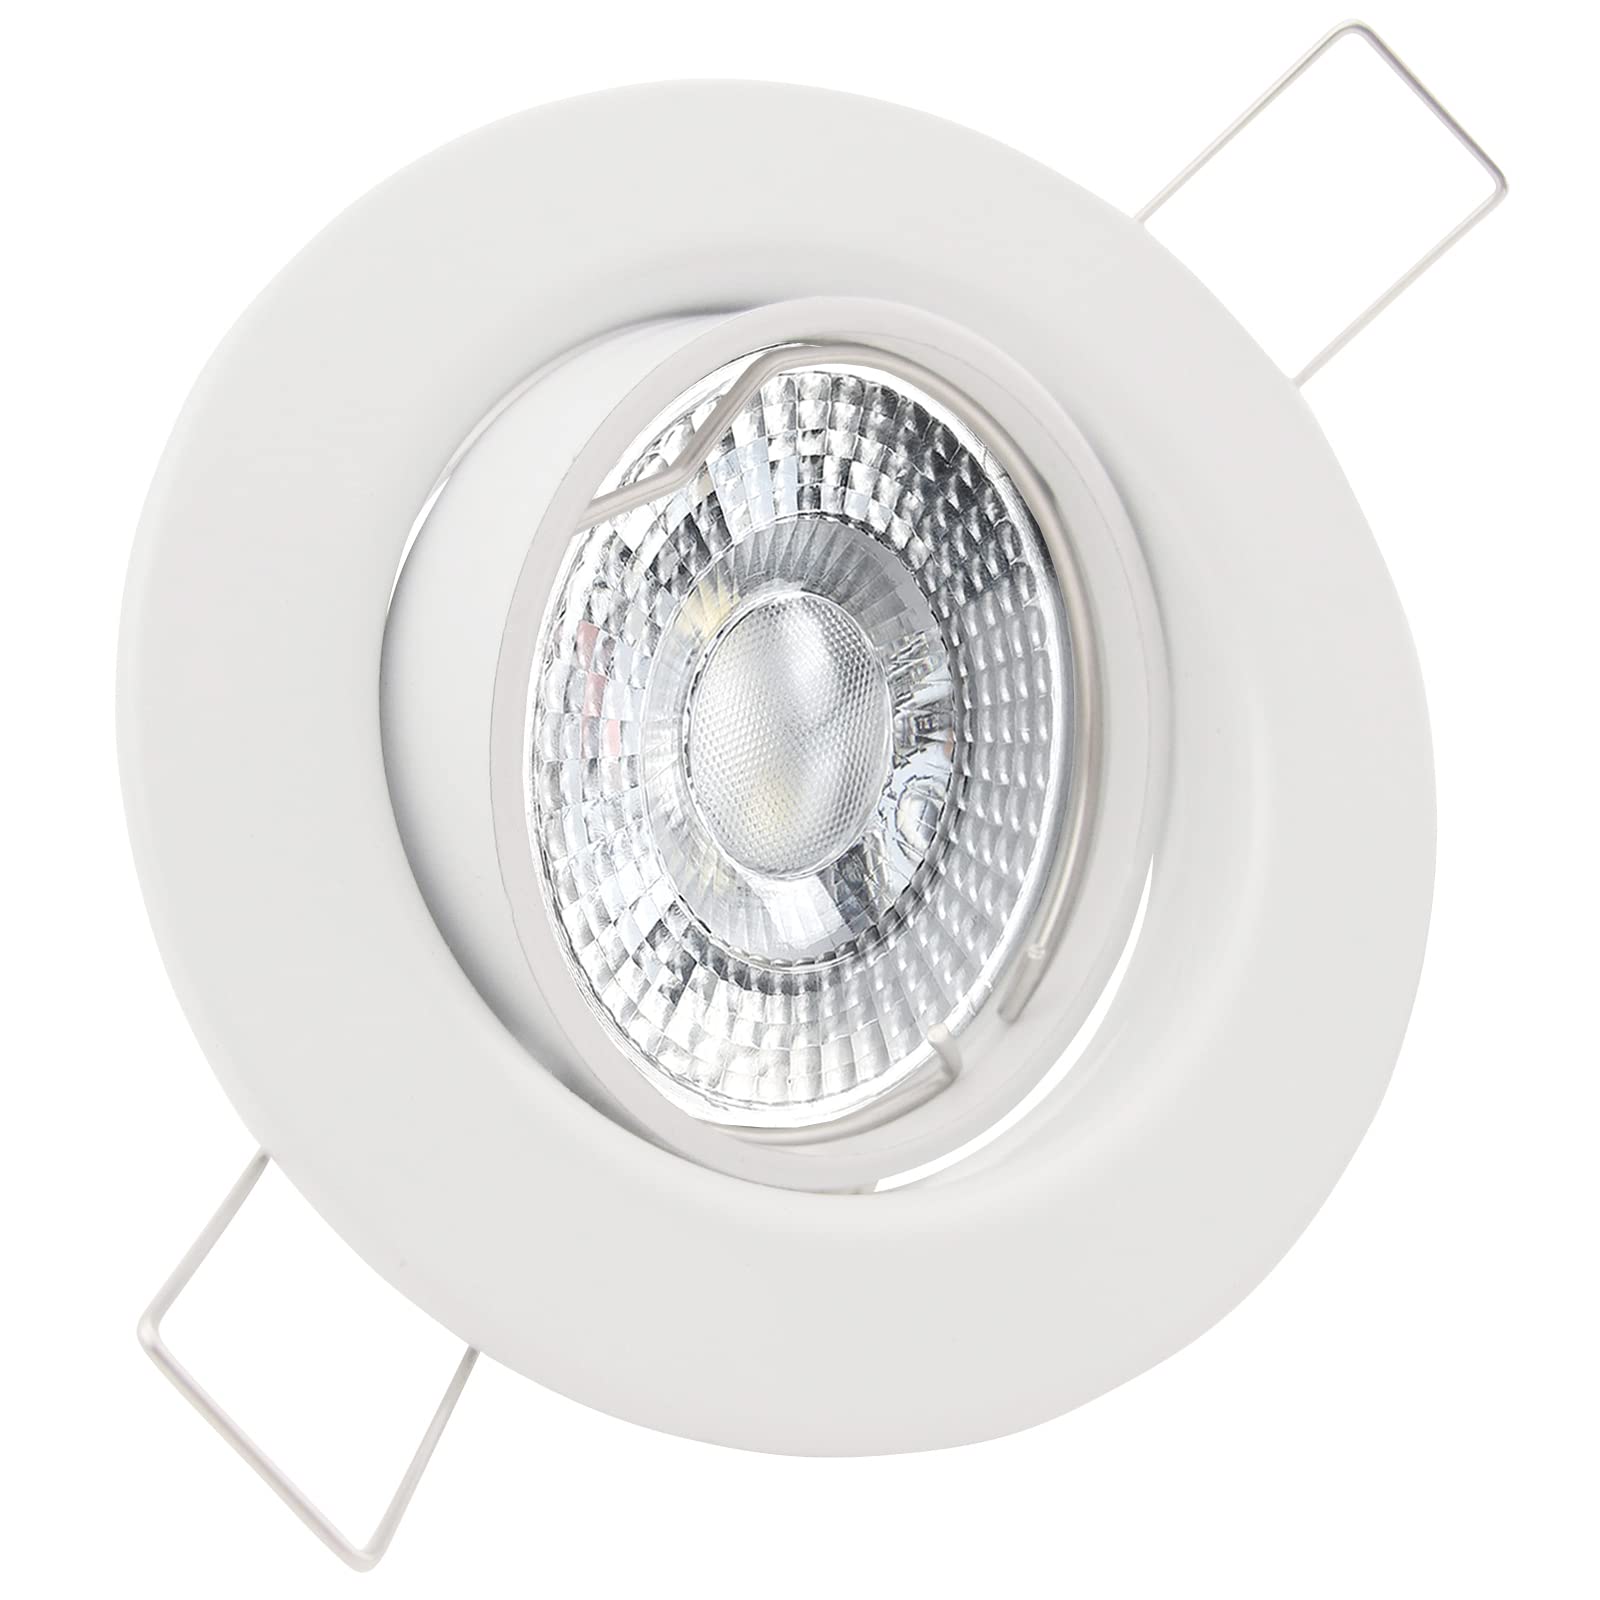 trendlights24 Decora LED Einbaustrahler 230V Weiß rund 3er Set - Spots 4W 405 lm 38-45° GU10 Neutralweiß - Decken Einbauleuchte schwenkbar